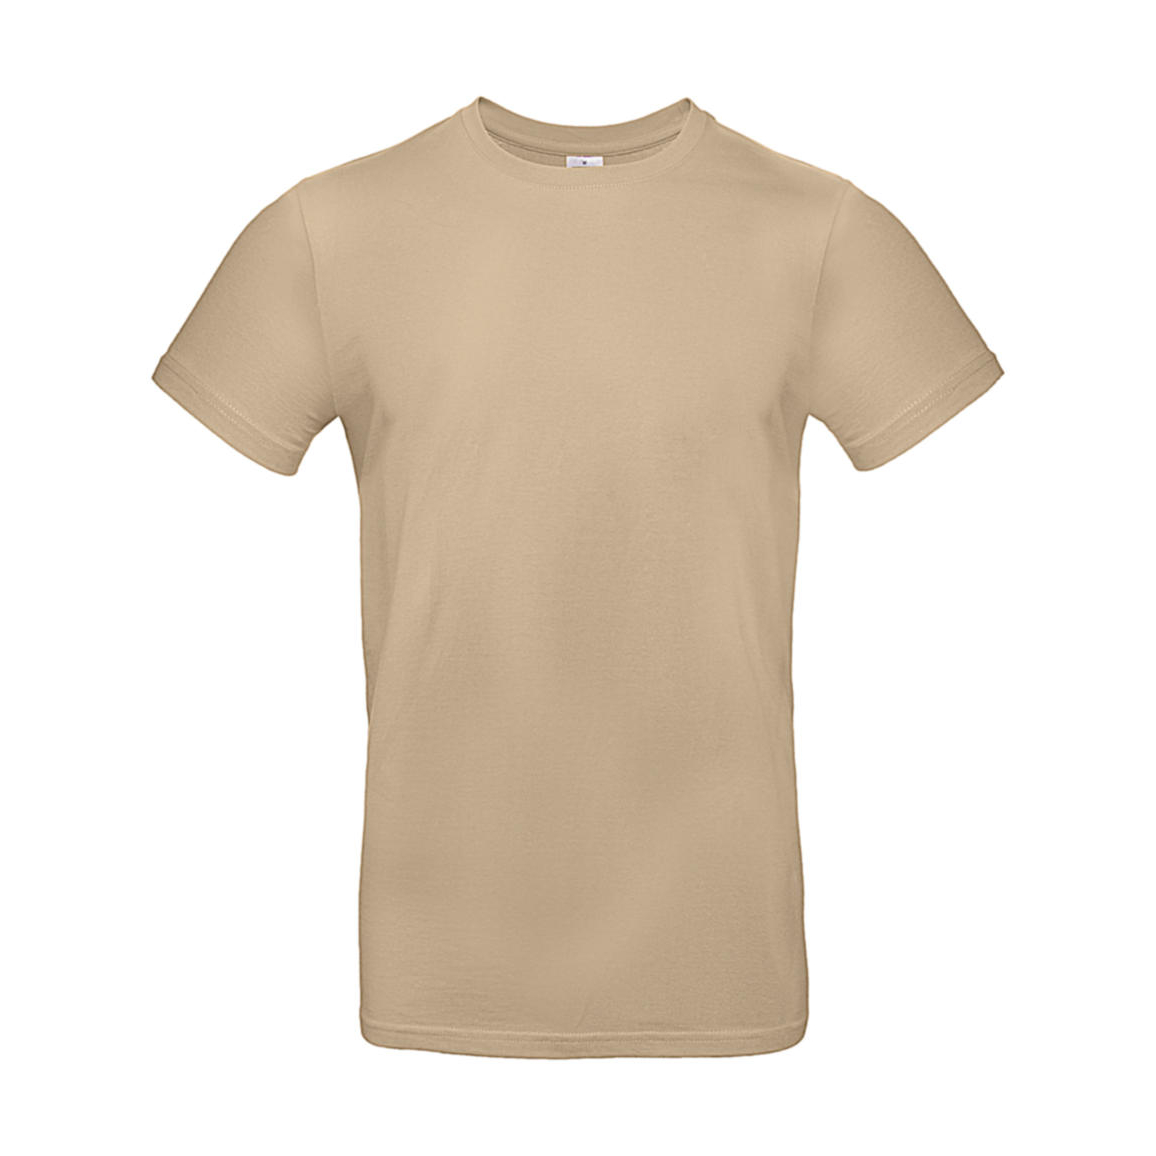 Triko pánské B&C E190 T-Shirt - béžové, M